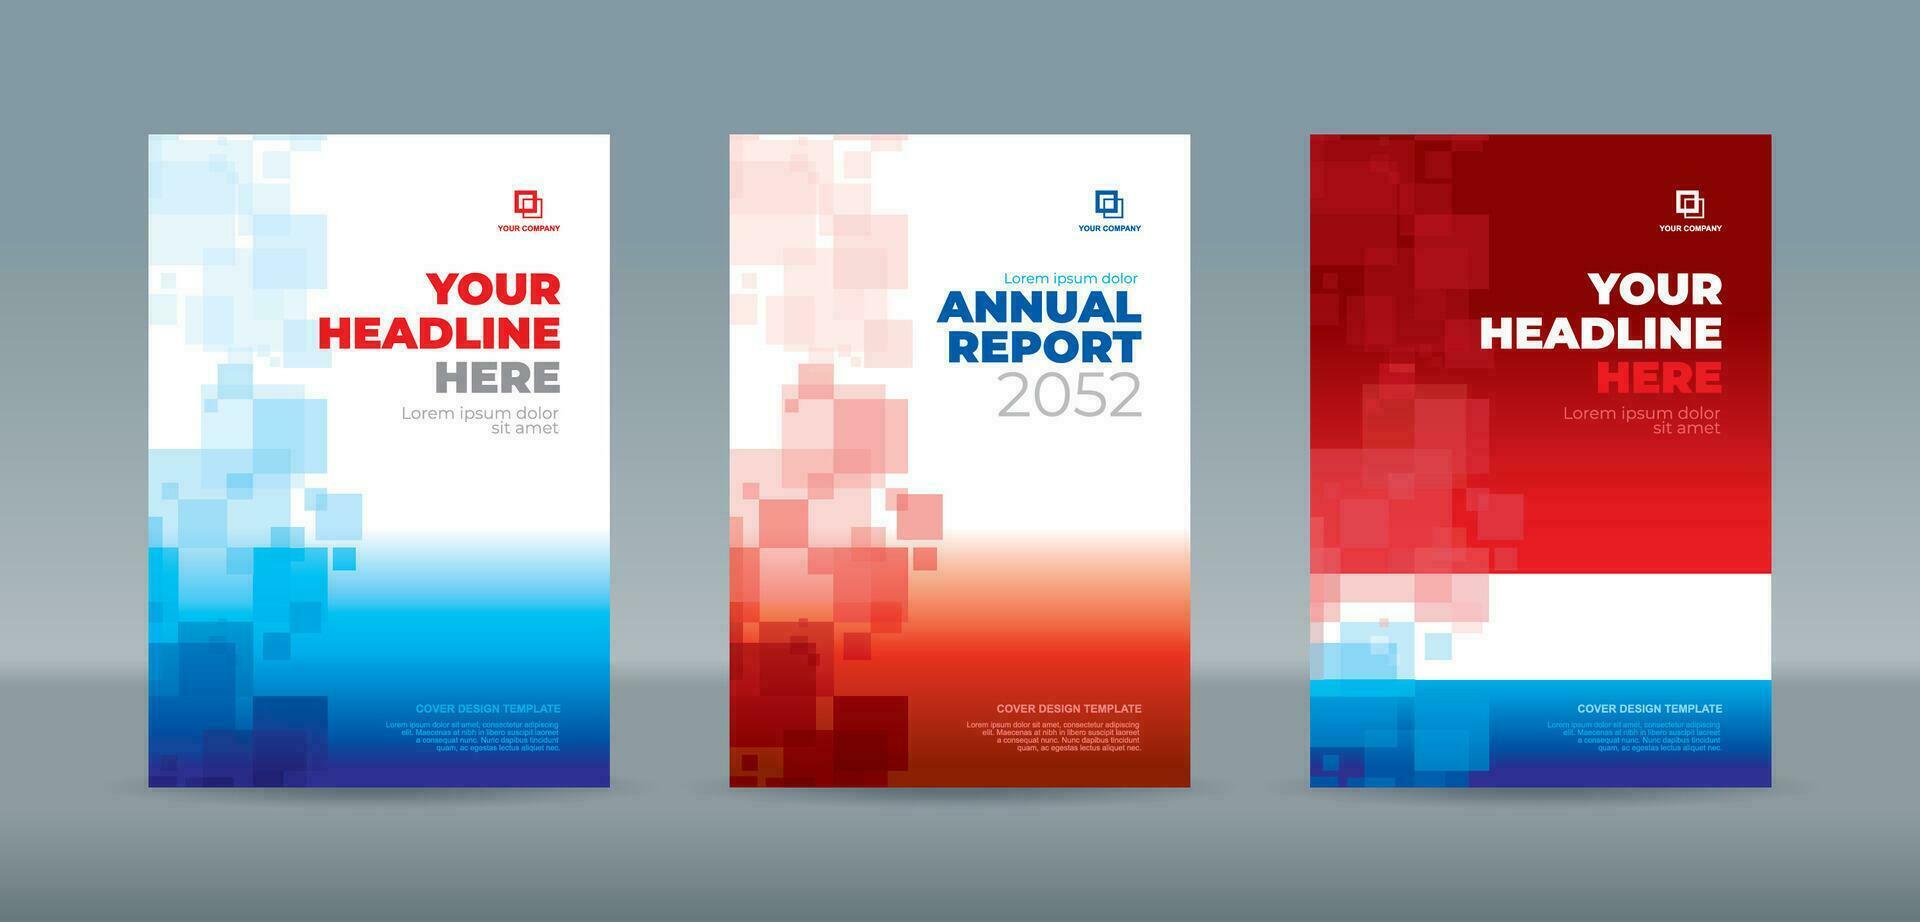 abstrakt slumpmässig transparent rektangel med ljus och mörk blå och röd bakgrund - a4 storlek omslag mall för årlig Rapportera, tidskrift, häfte, förslag, portfölj, broschyr, affisch vektor